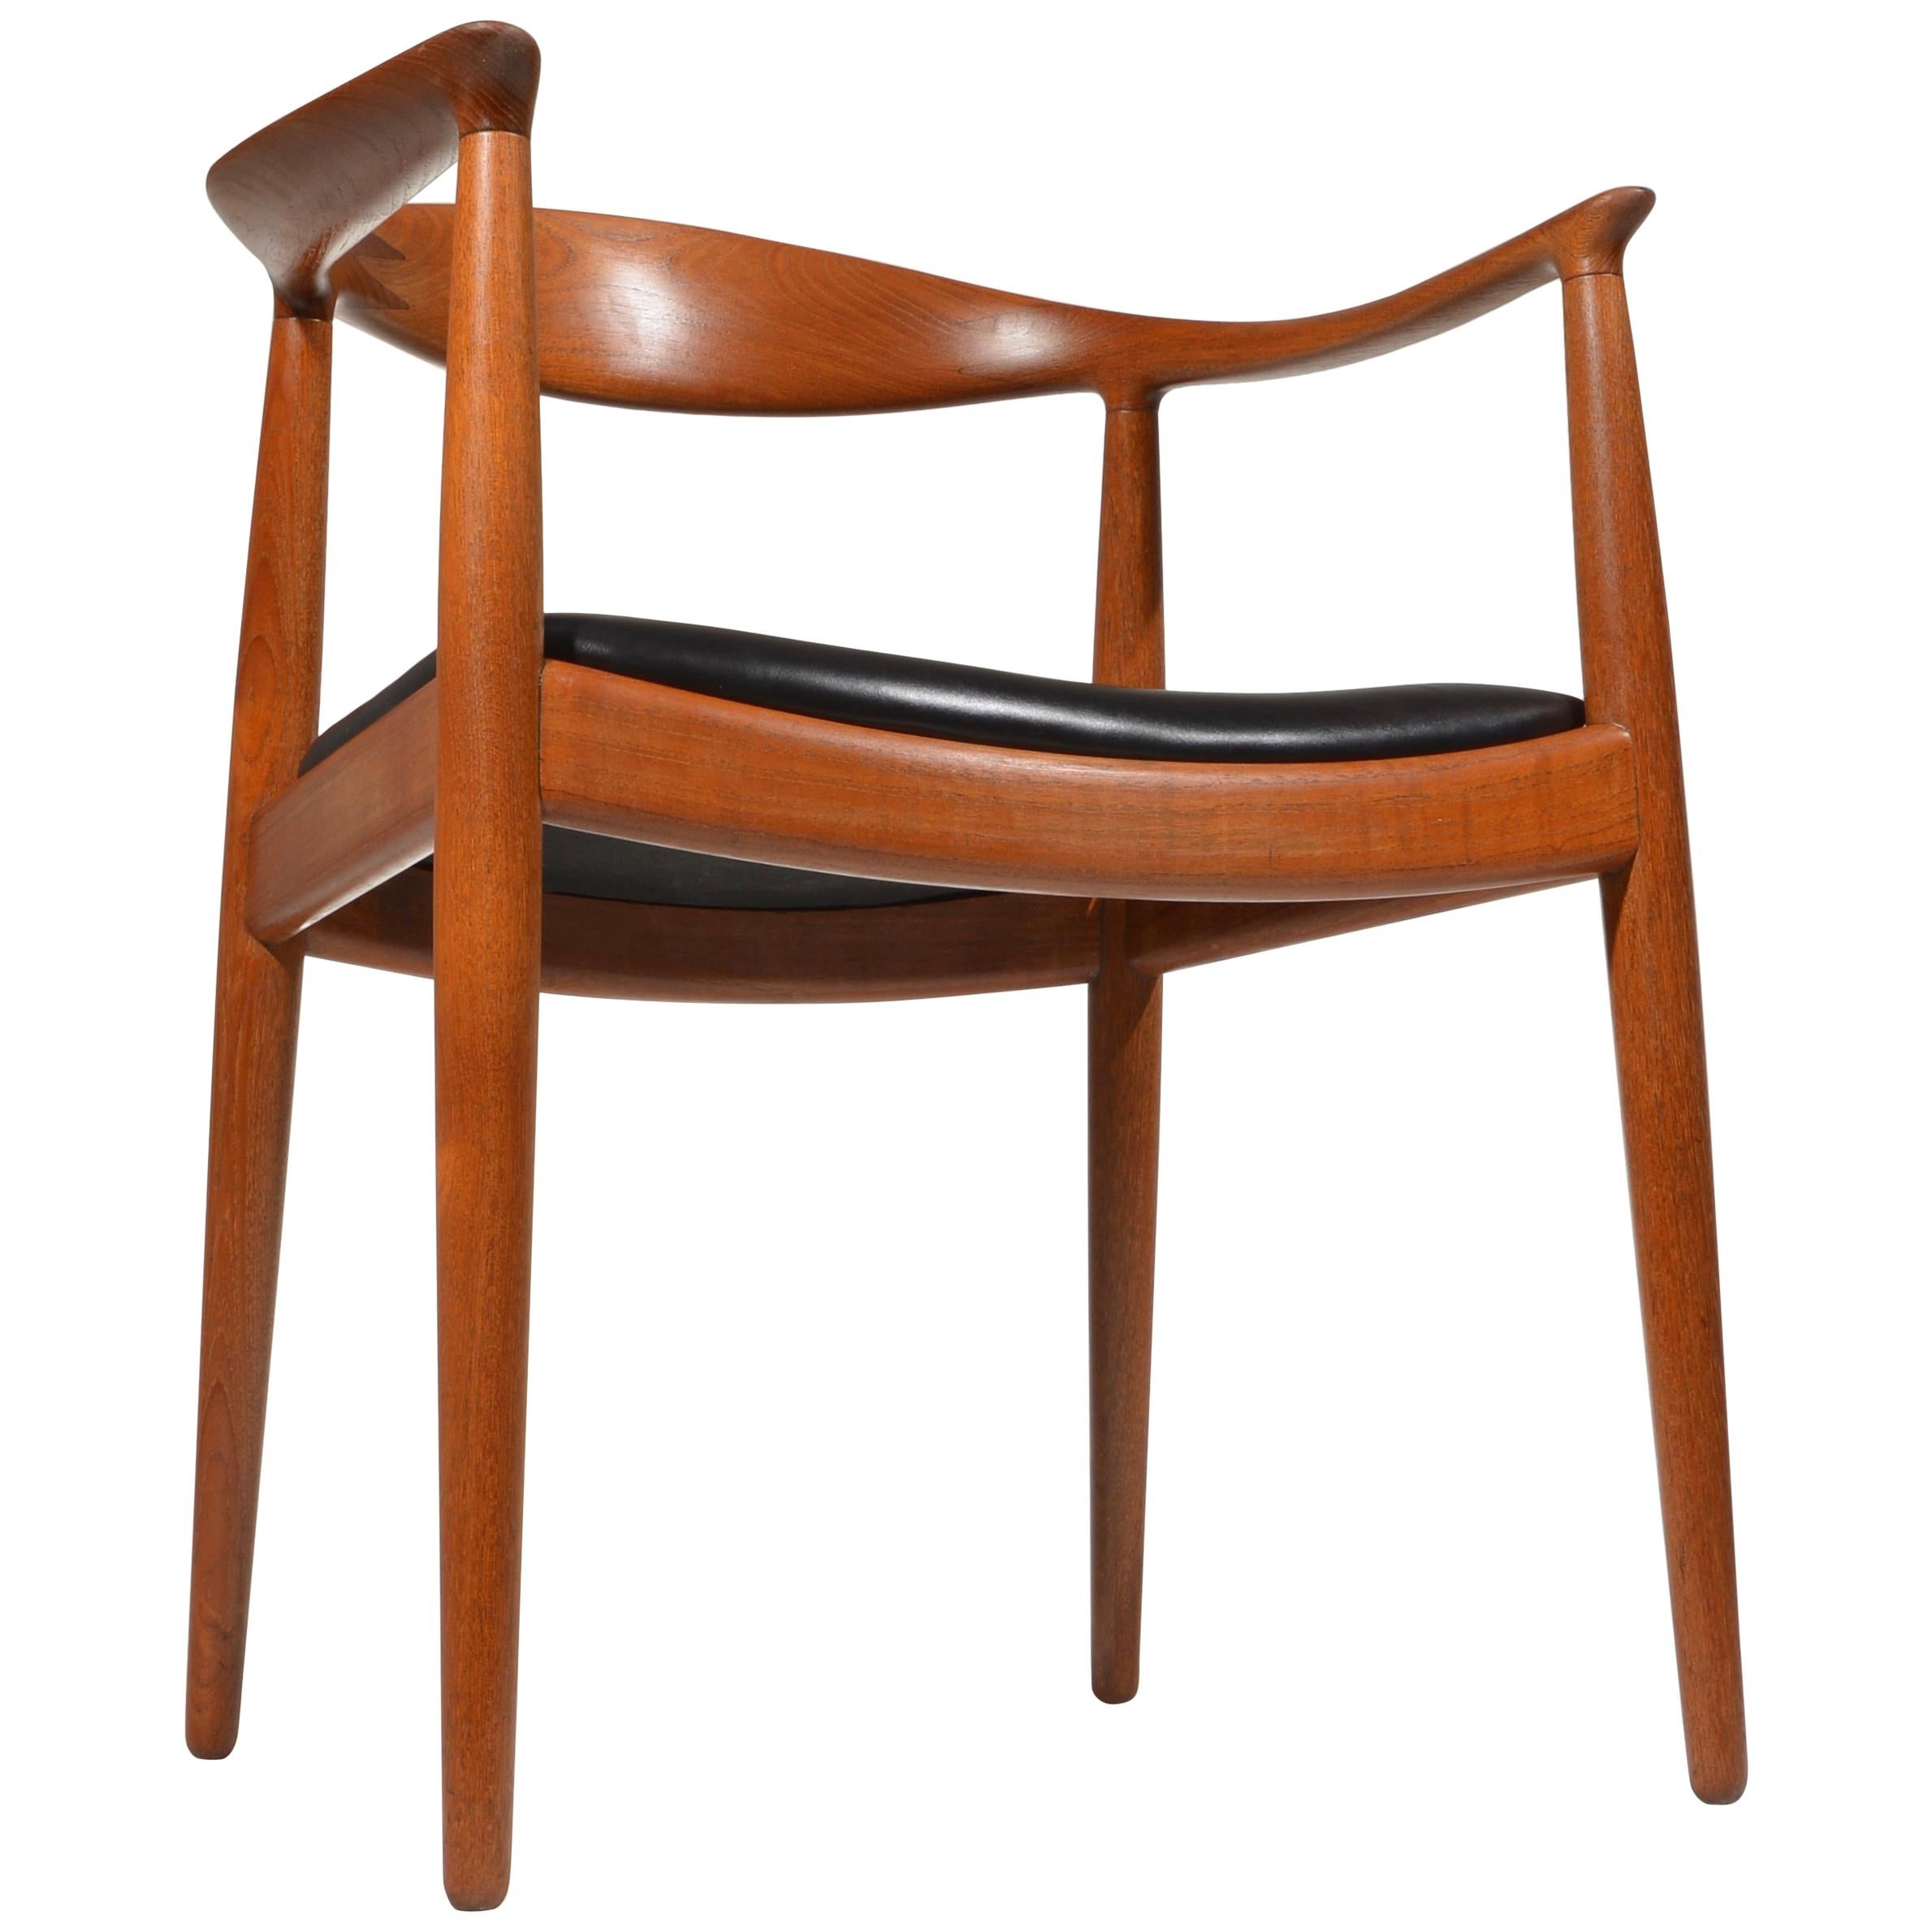 10 Hans Wegner for Johannes Hansen JH-503 Chairs in Teak and Leather